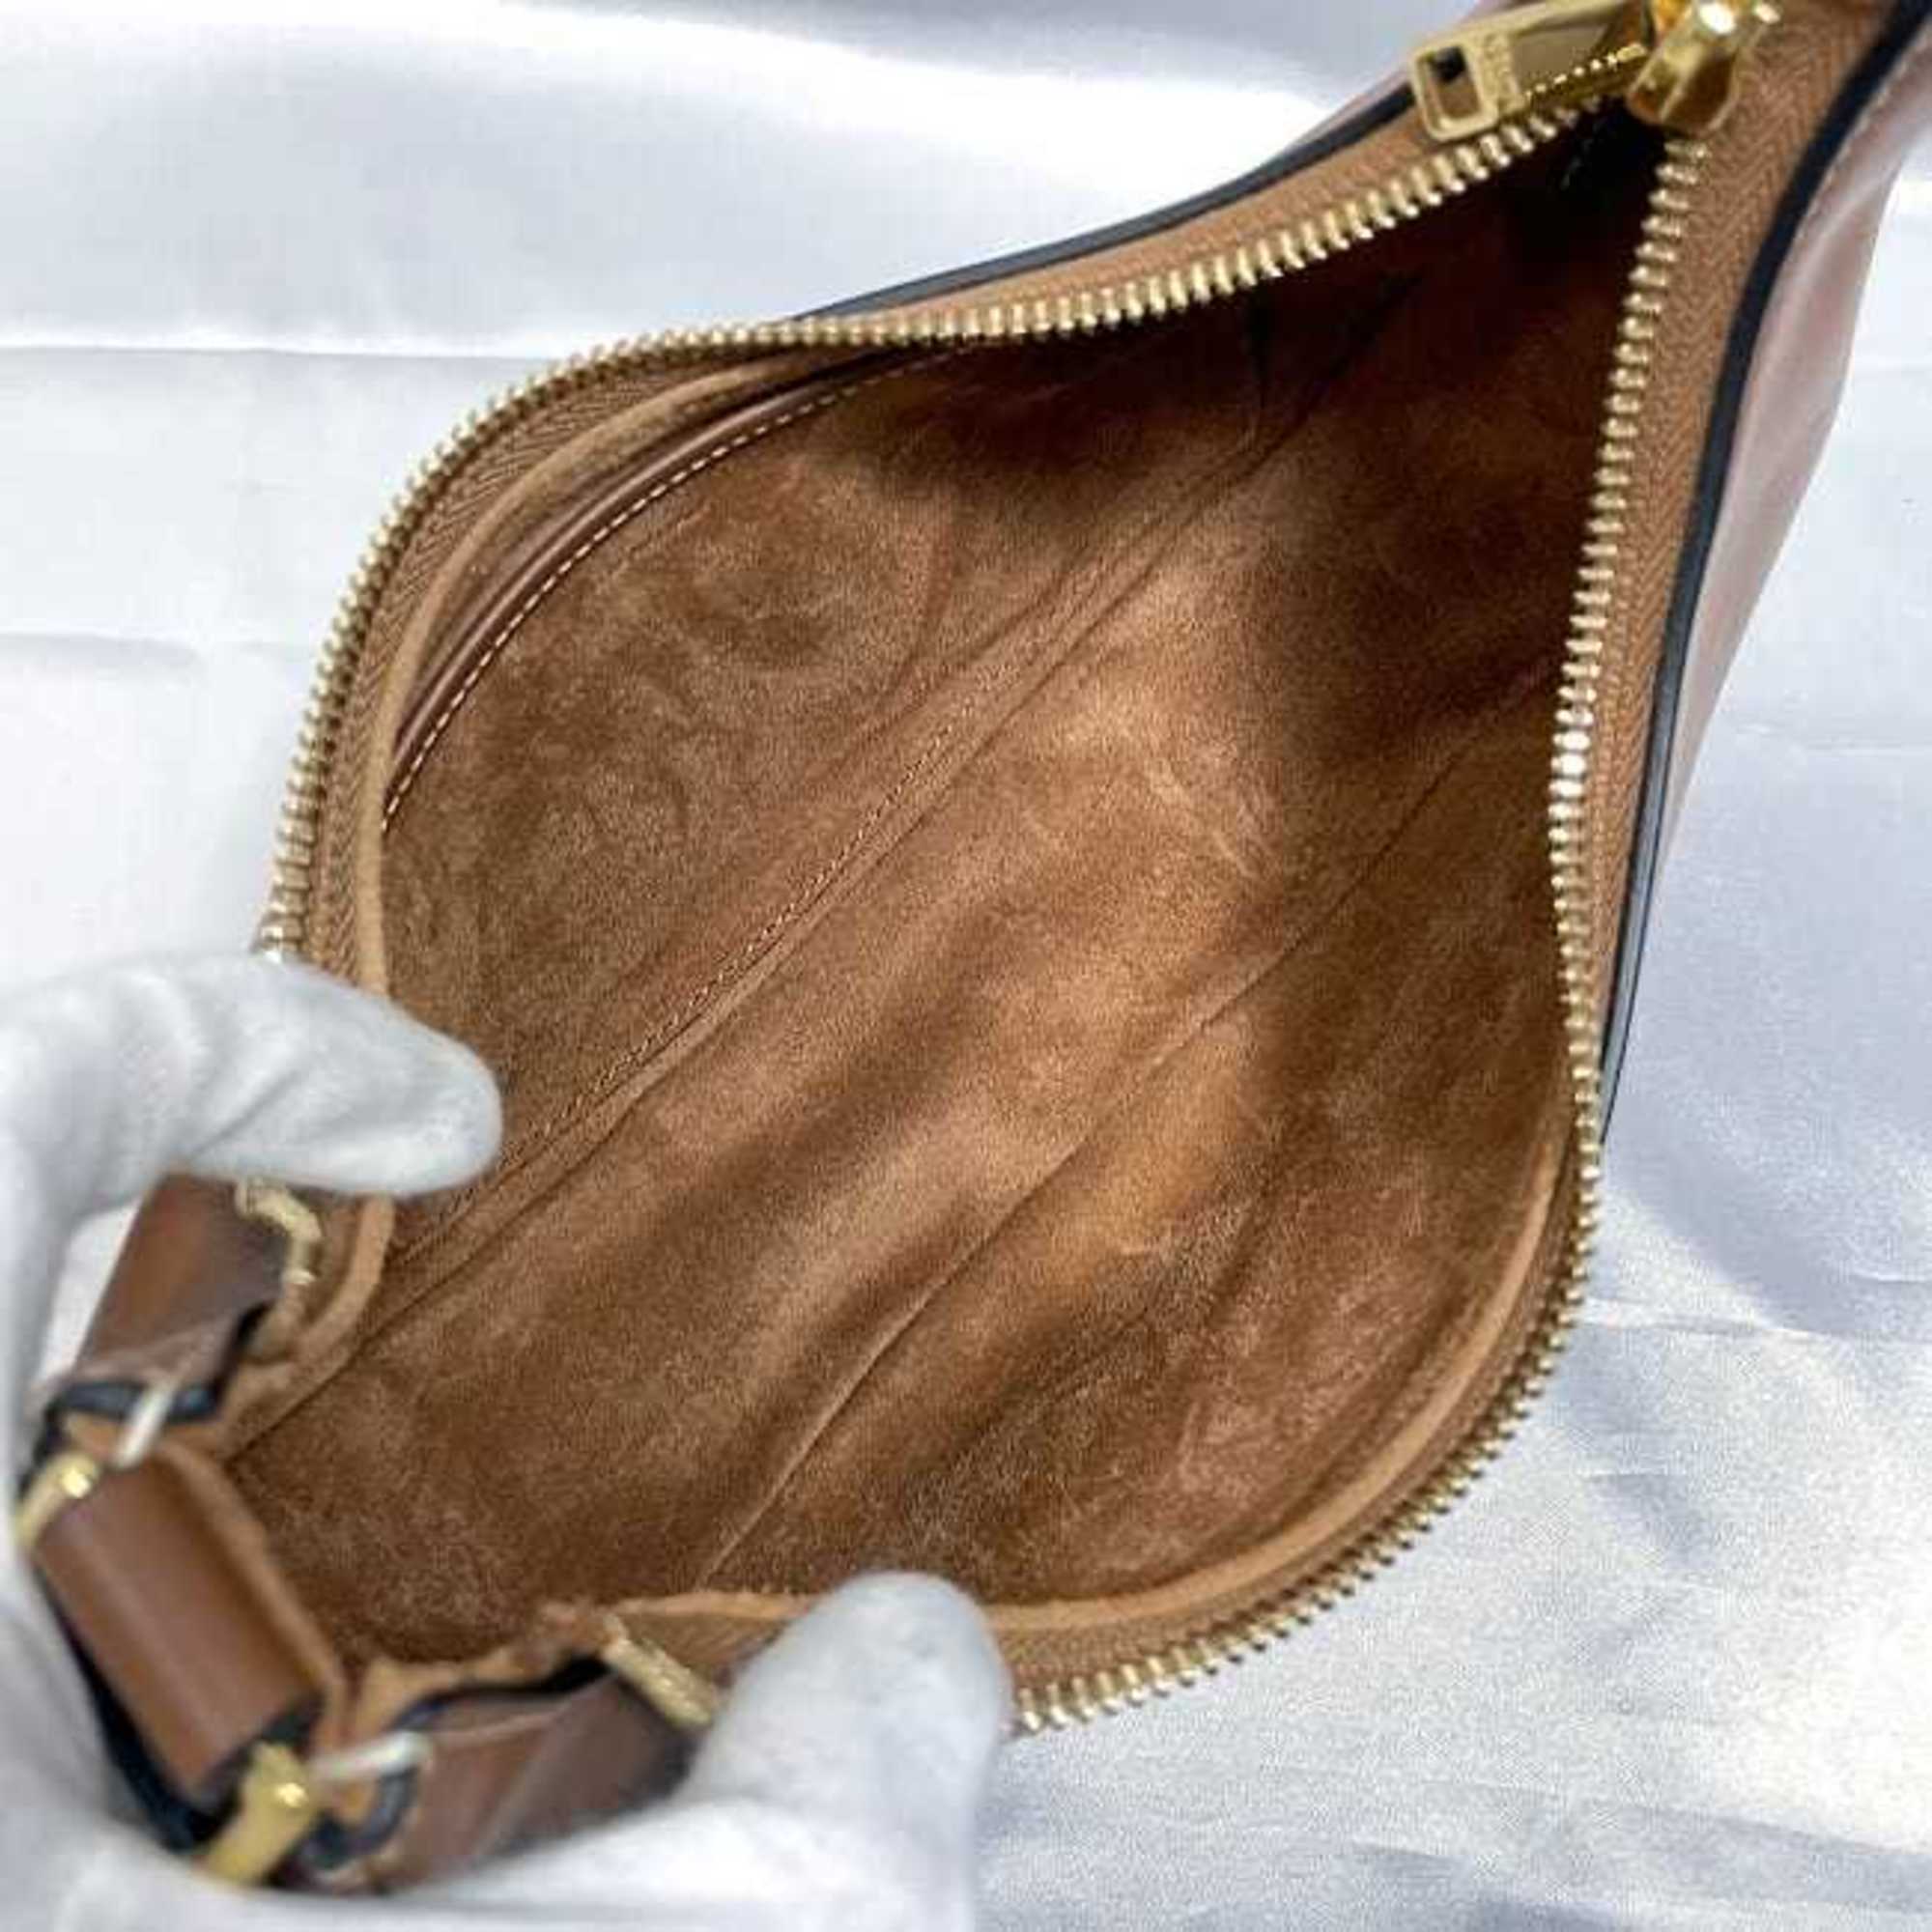 CELINE Medium Ava Strap Bag Brown 19692 f-19943 Hobo Leather Women's